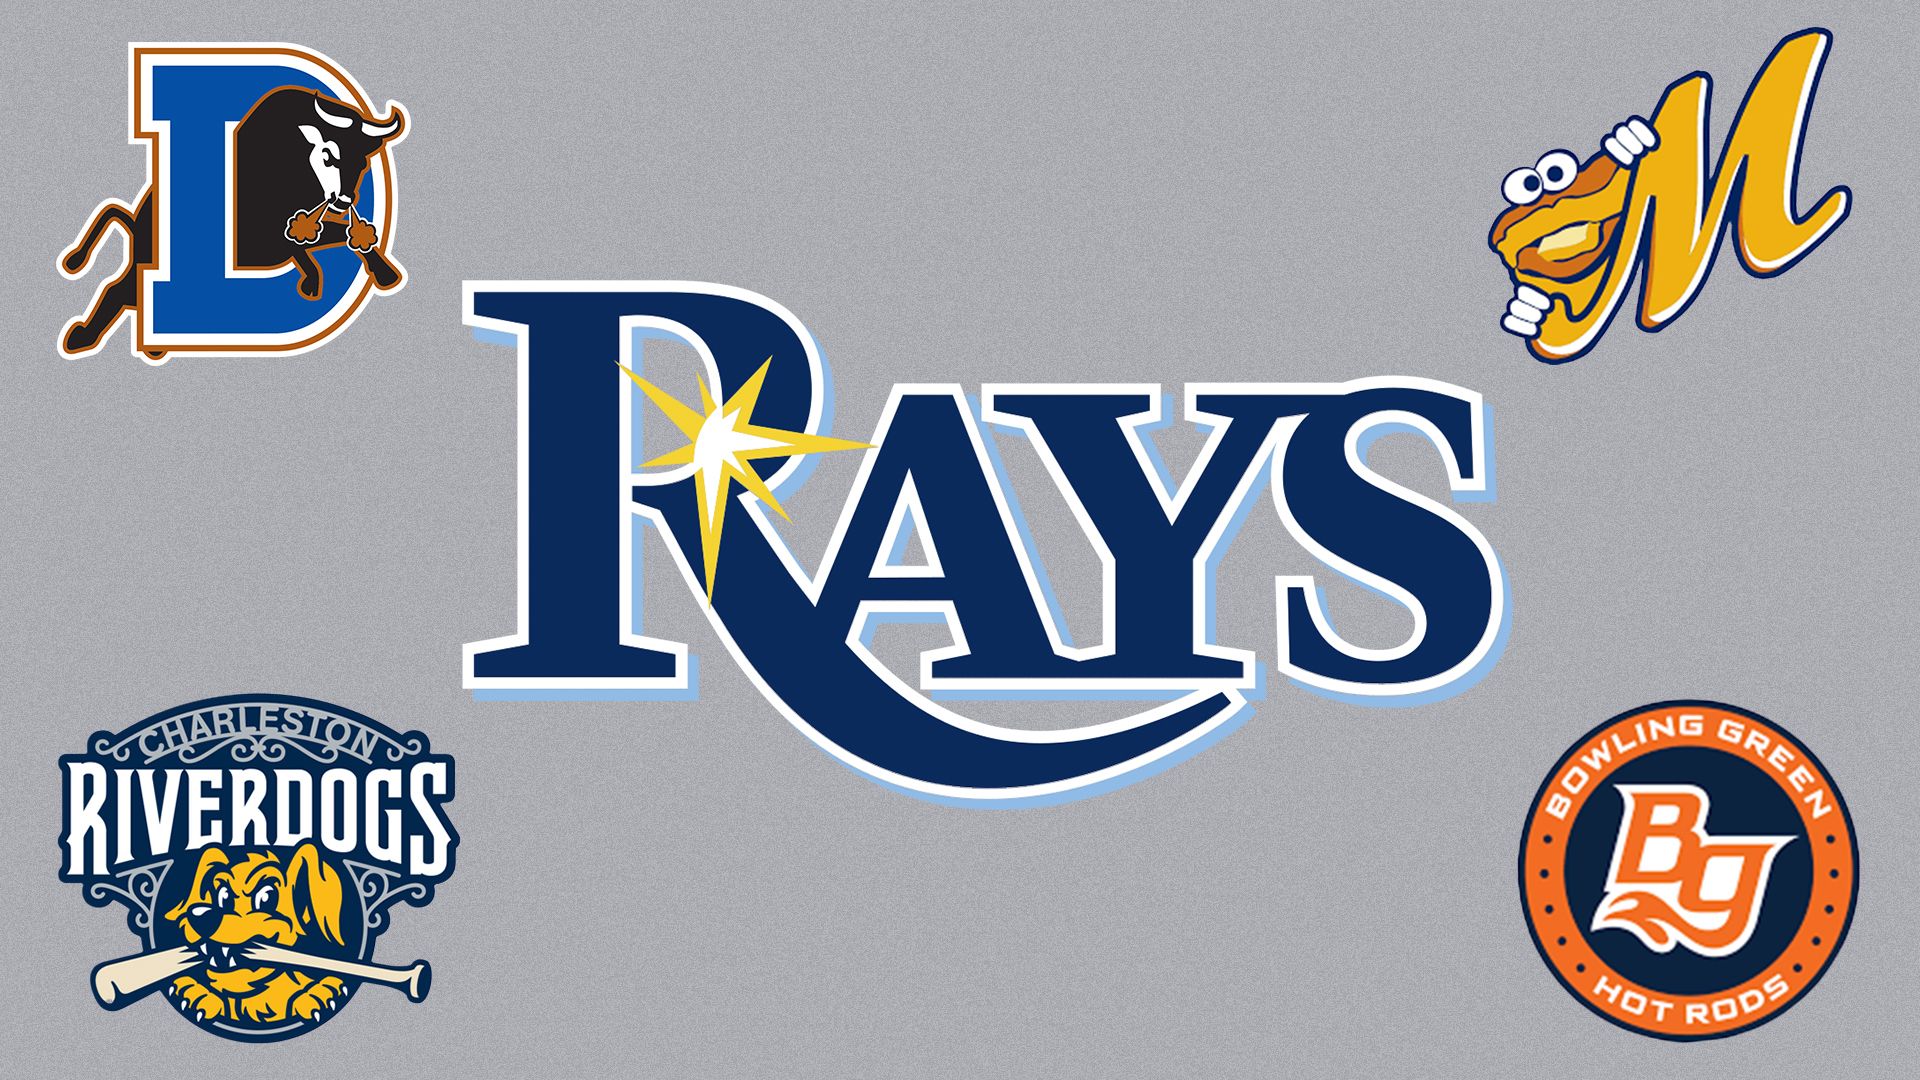 Tampa Bay Rays logos